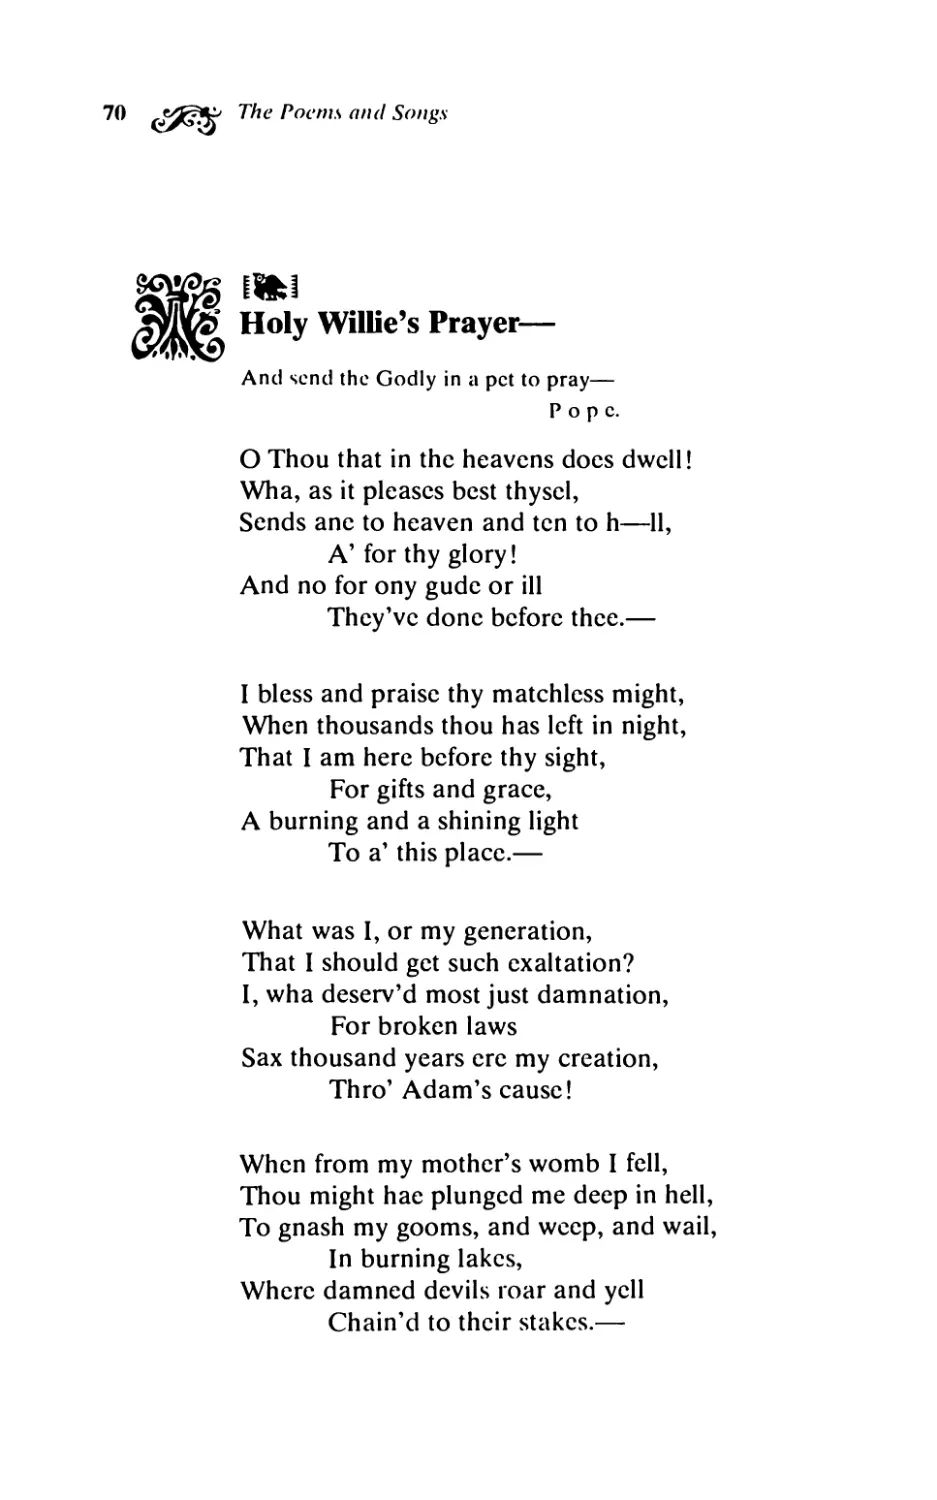 Holy Willie’s Prayer-